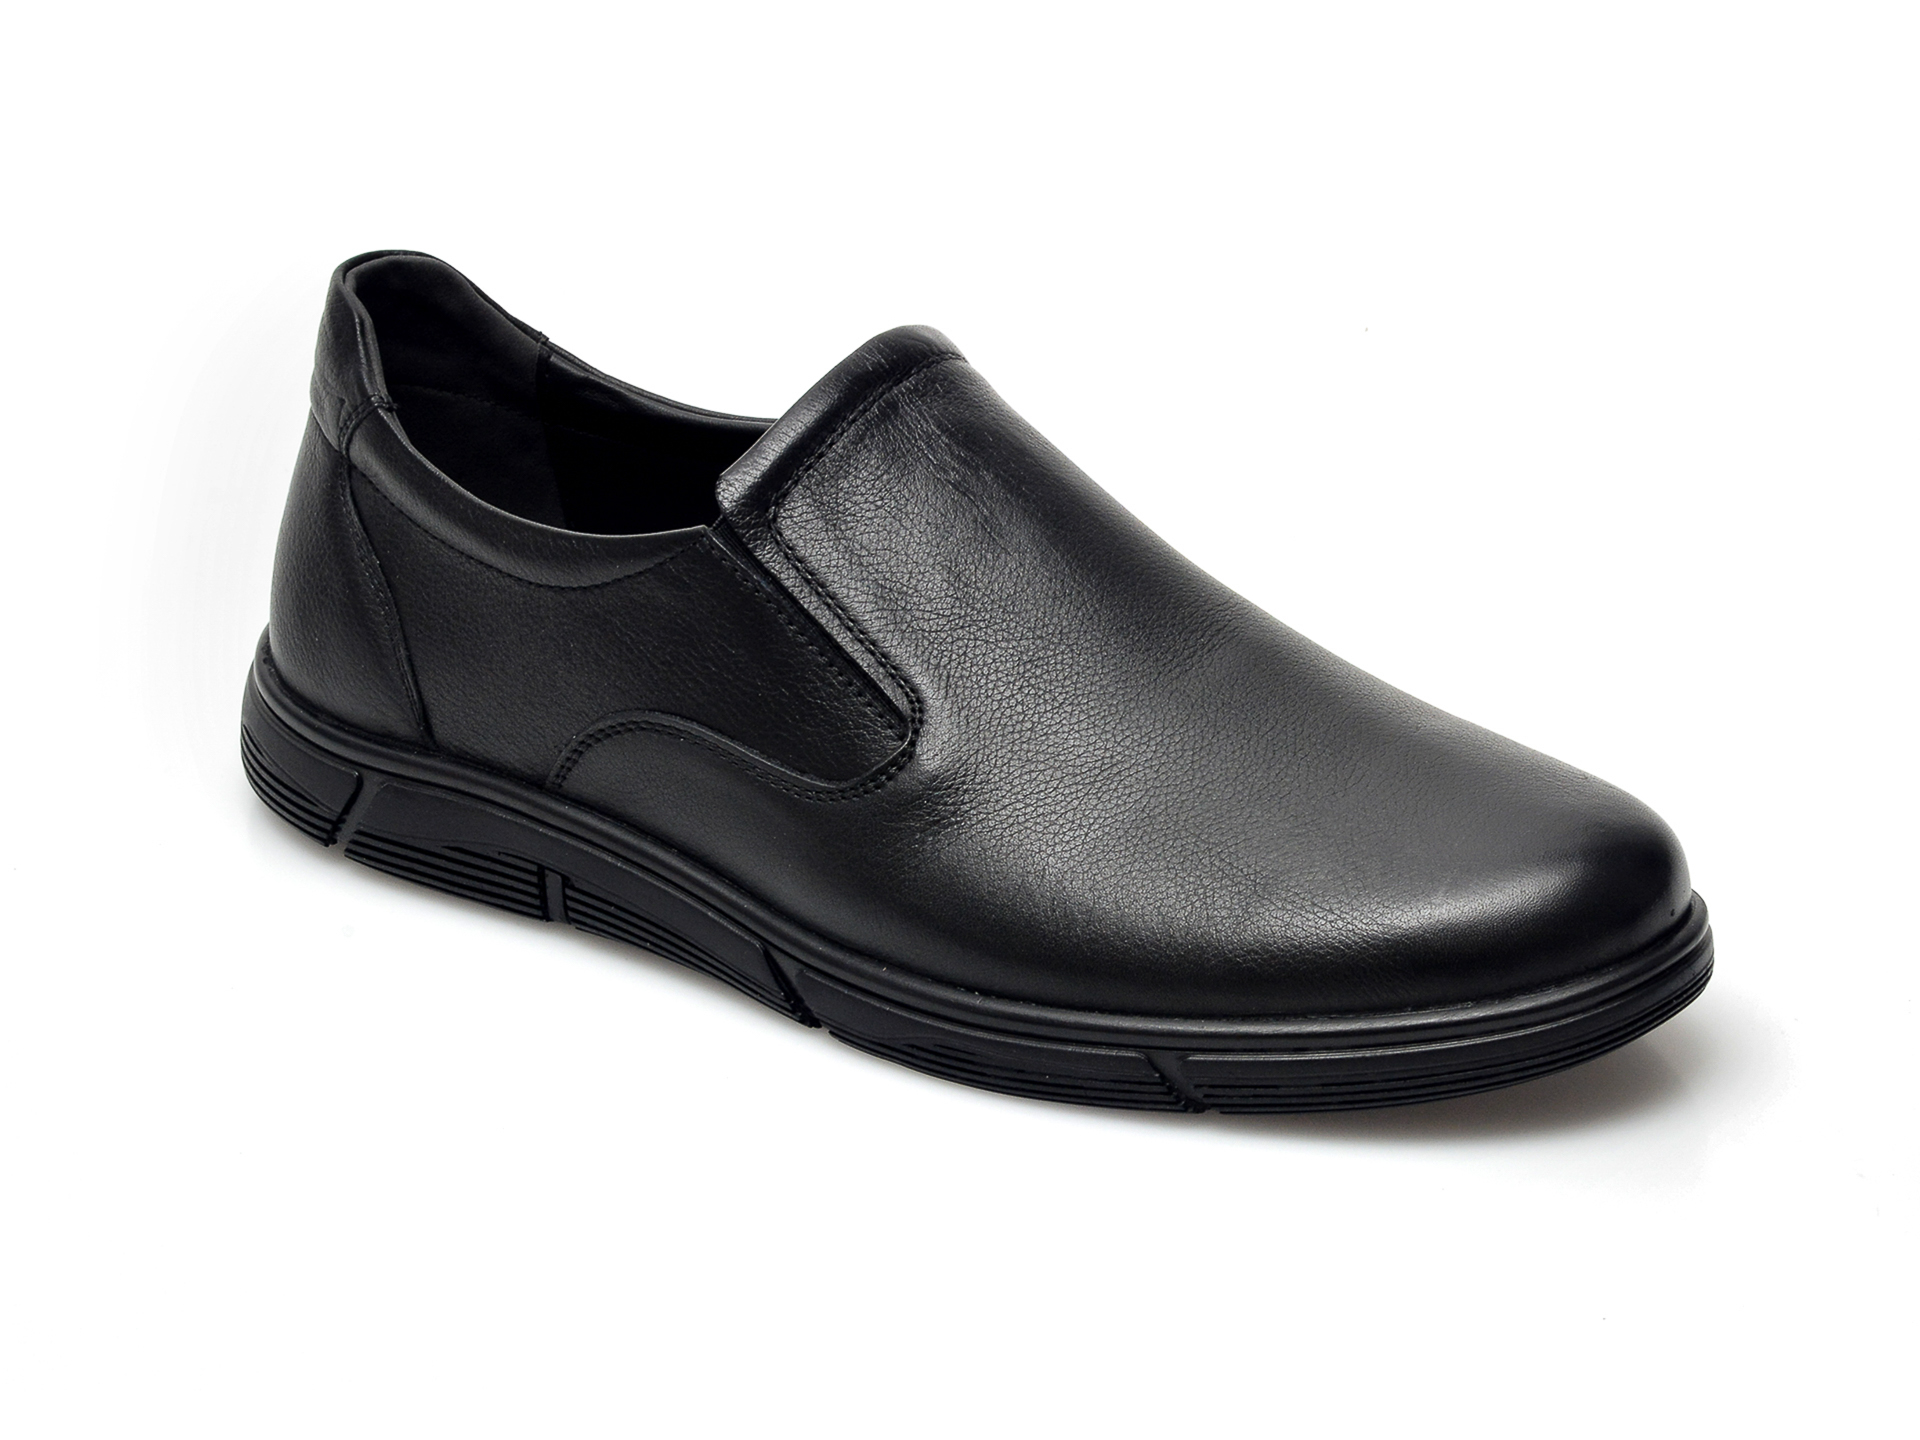 Pantofi POLARIS negri, 104060, din piele naturala otter.ro